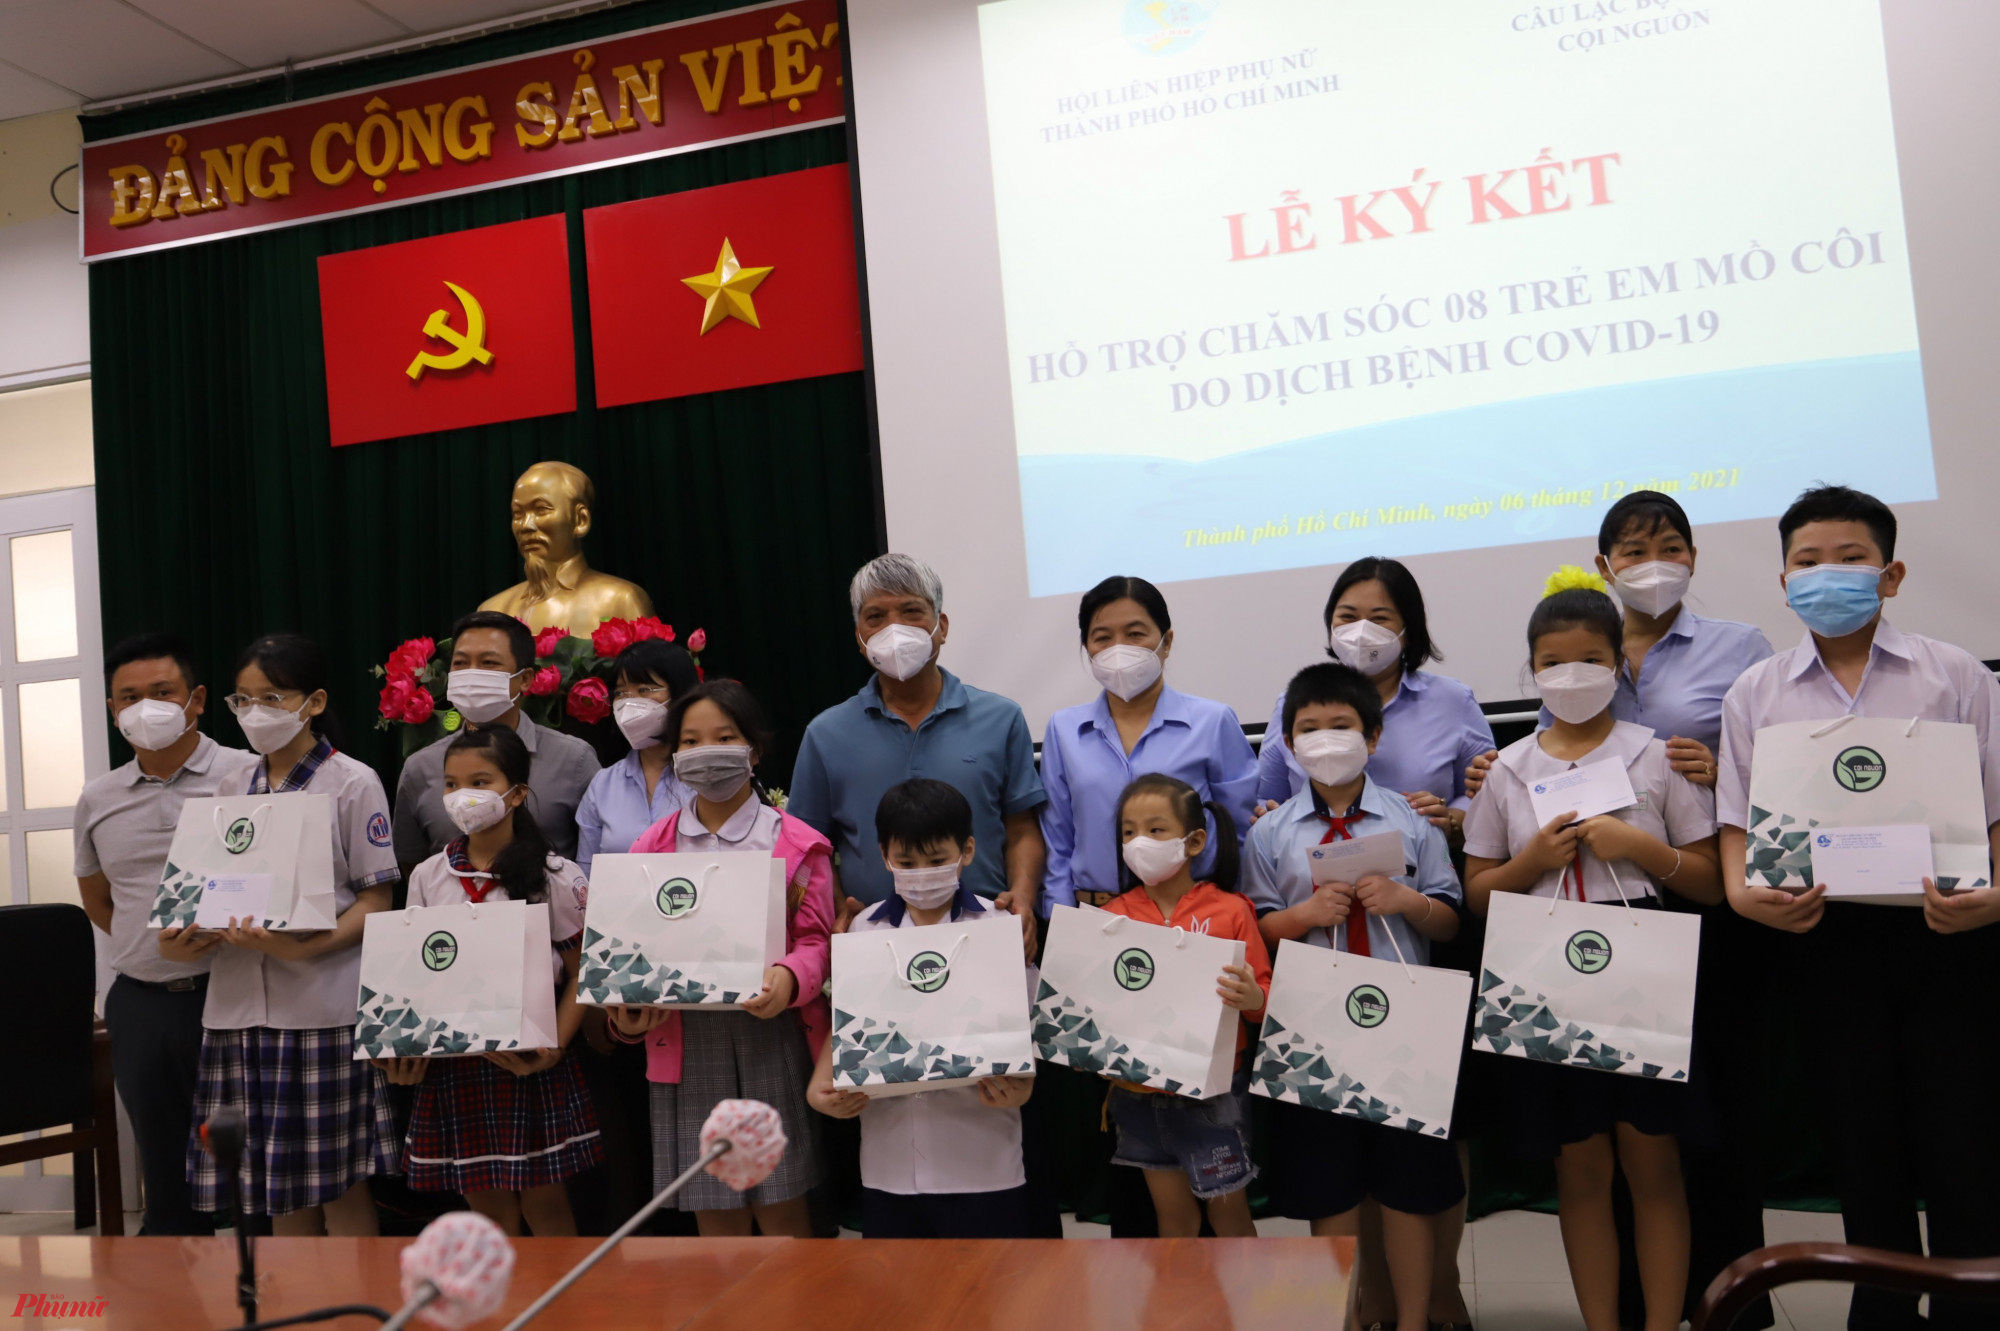 08 trẻ em mồ côi được Hội LHPN Thành phố Hồ Chí Minh          tổ chức Lễ ký kết với Câu lạc bộ Golf Cội Nguồn